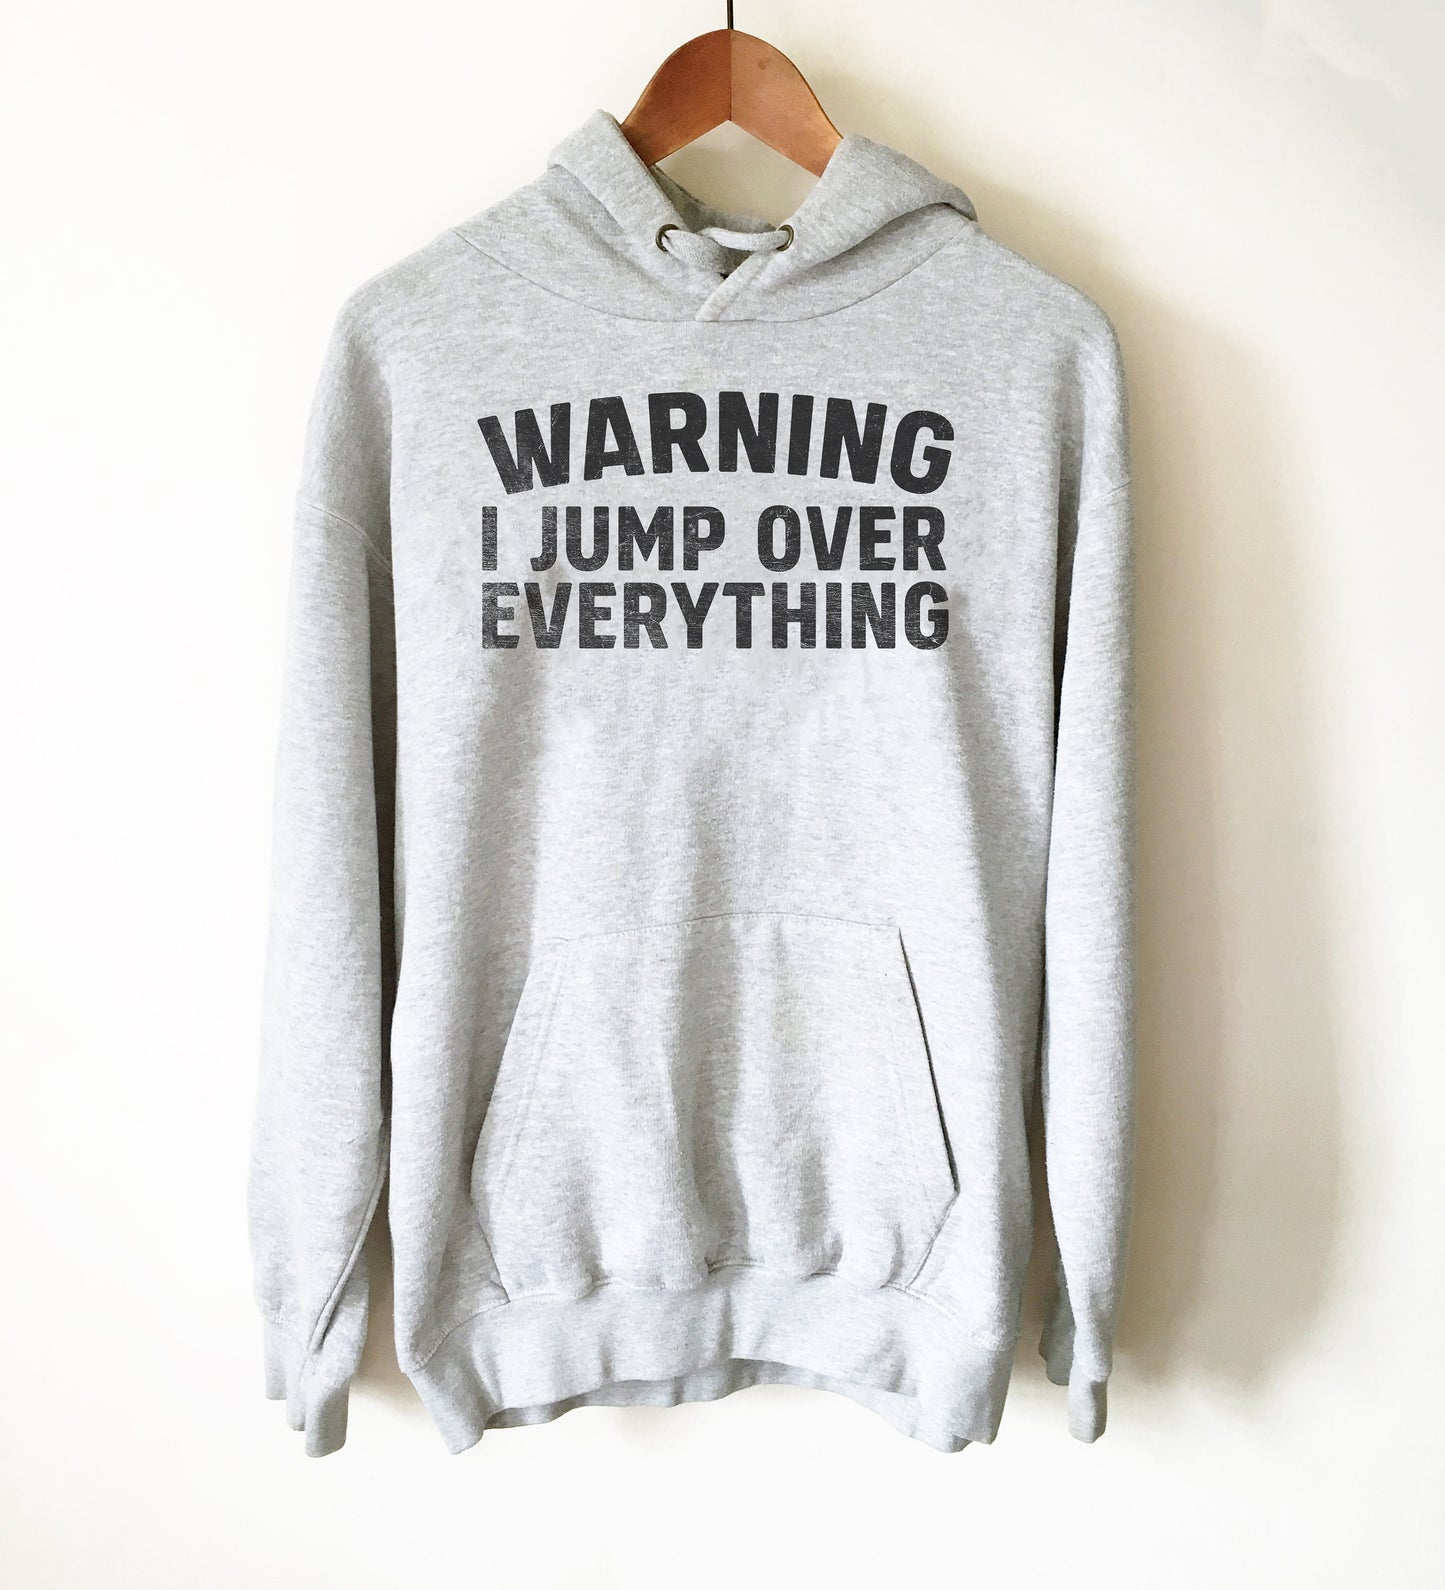 Warning I Jump Over Everything Hoodie - Freerunning Shirt, Freerunning Gift, Free Run, Acrobat Shirt, Gymnast Shirt